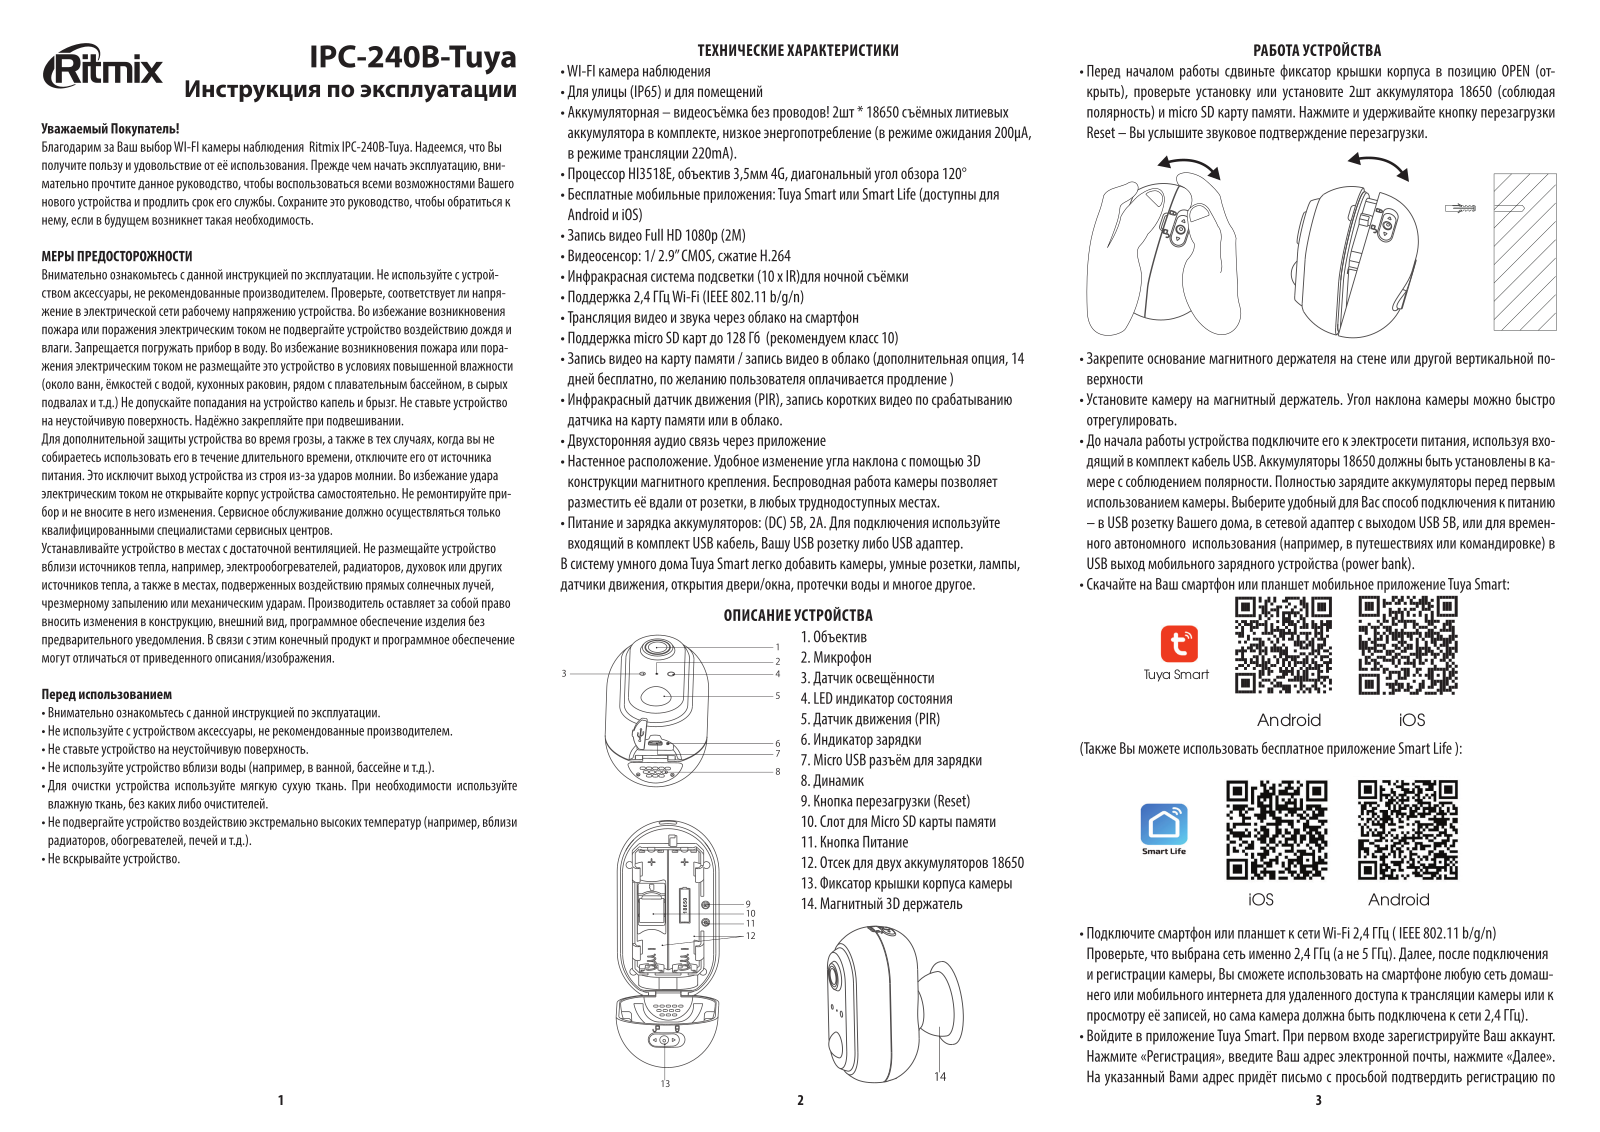 Ritmix IPC-240B-Tuya User Manual